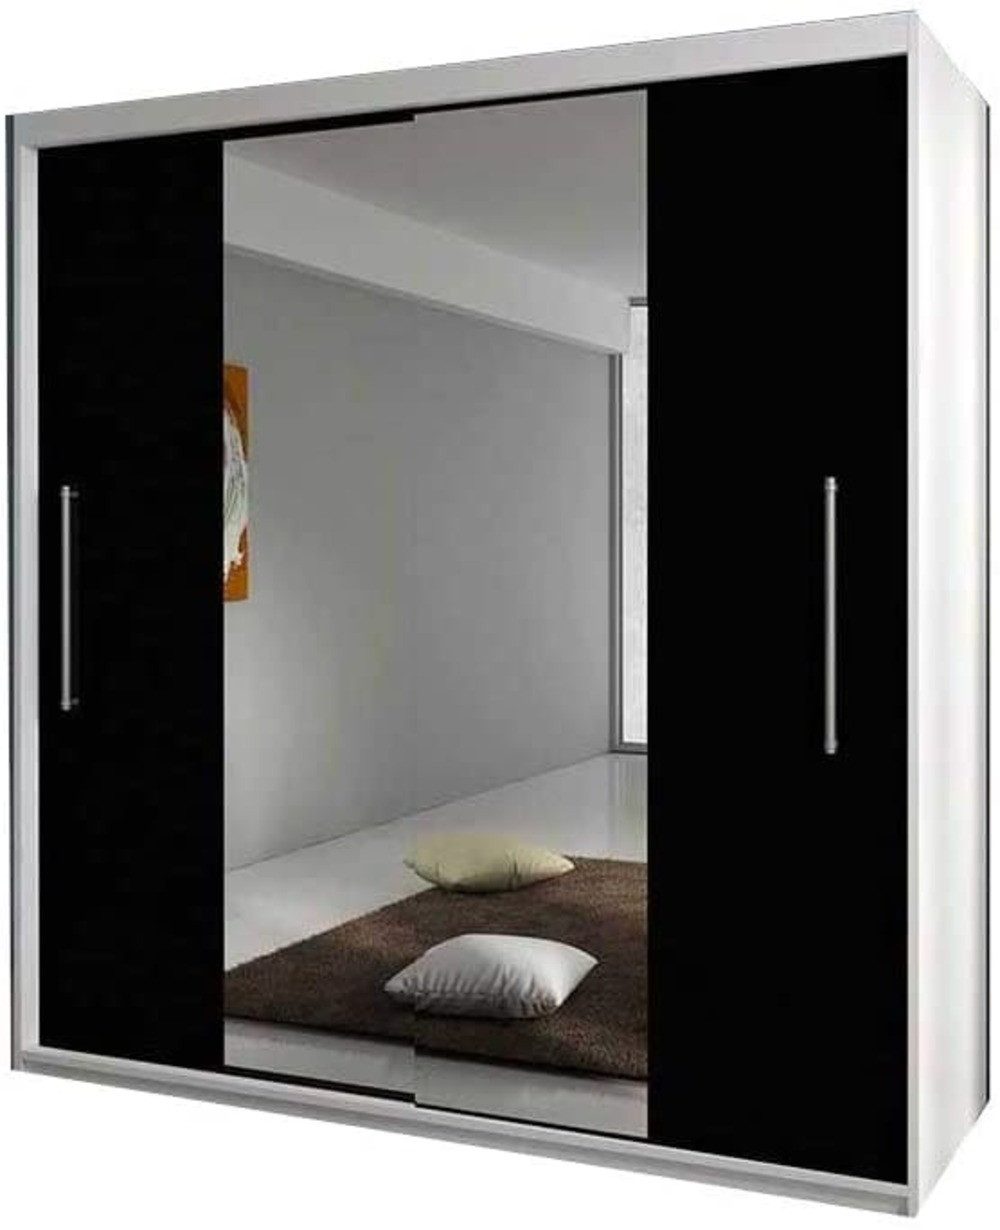 MOEBLO Kleiderschrank NICO mit spiegel (Wohnzimmer Schiebetüren Schrank Modern Design, Schwebetürenschrank, Kleiderstange und Einlegeboden für Schlafzimmer) - (BxHxT): 204x218x58 cm